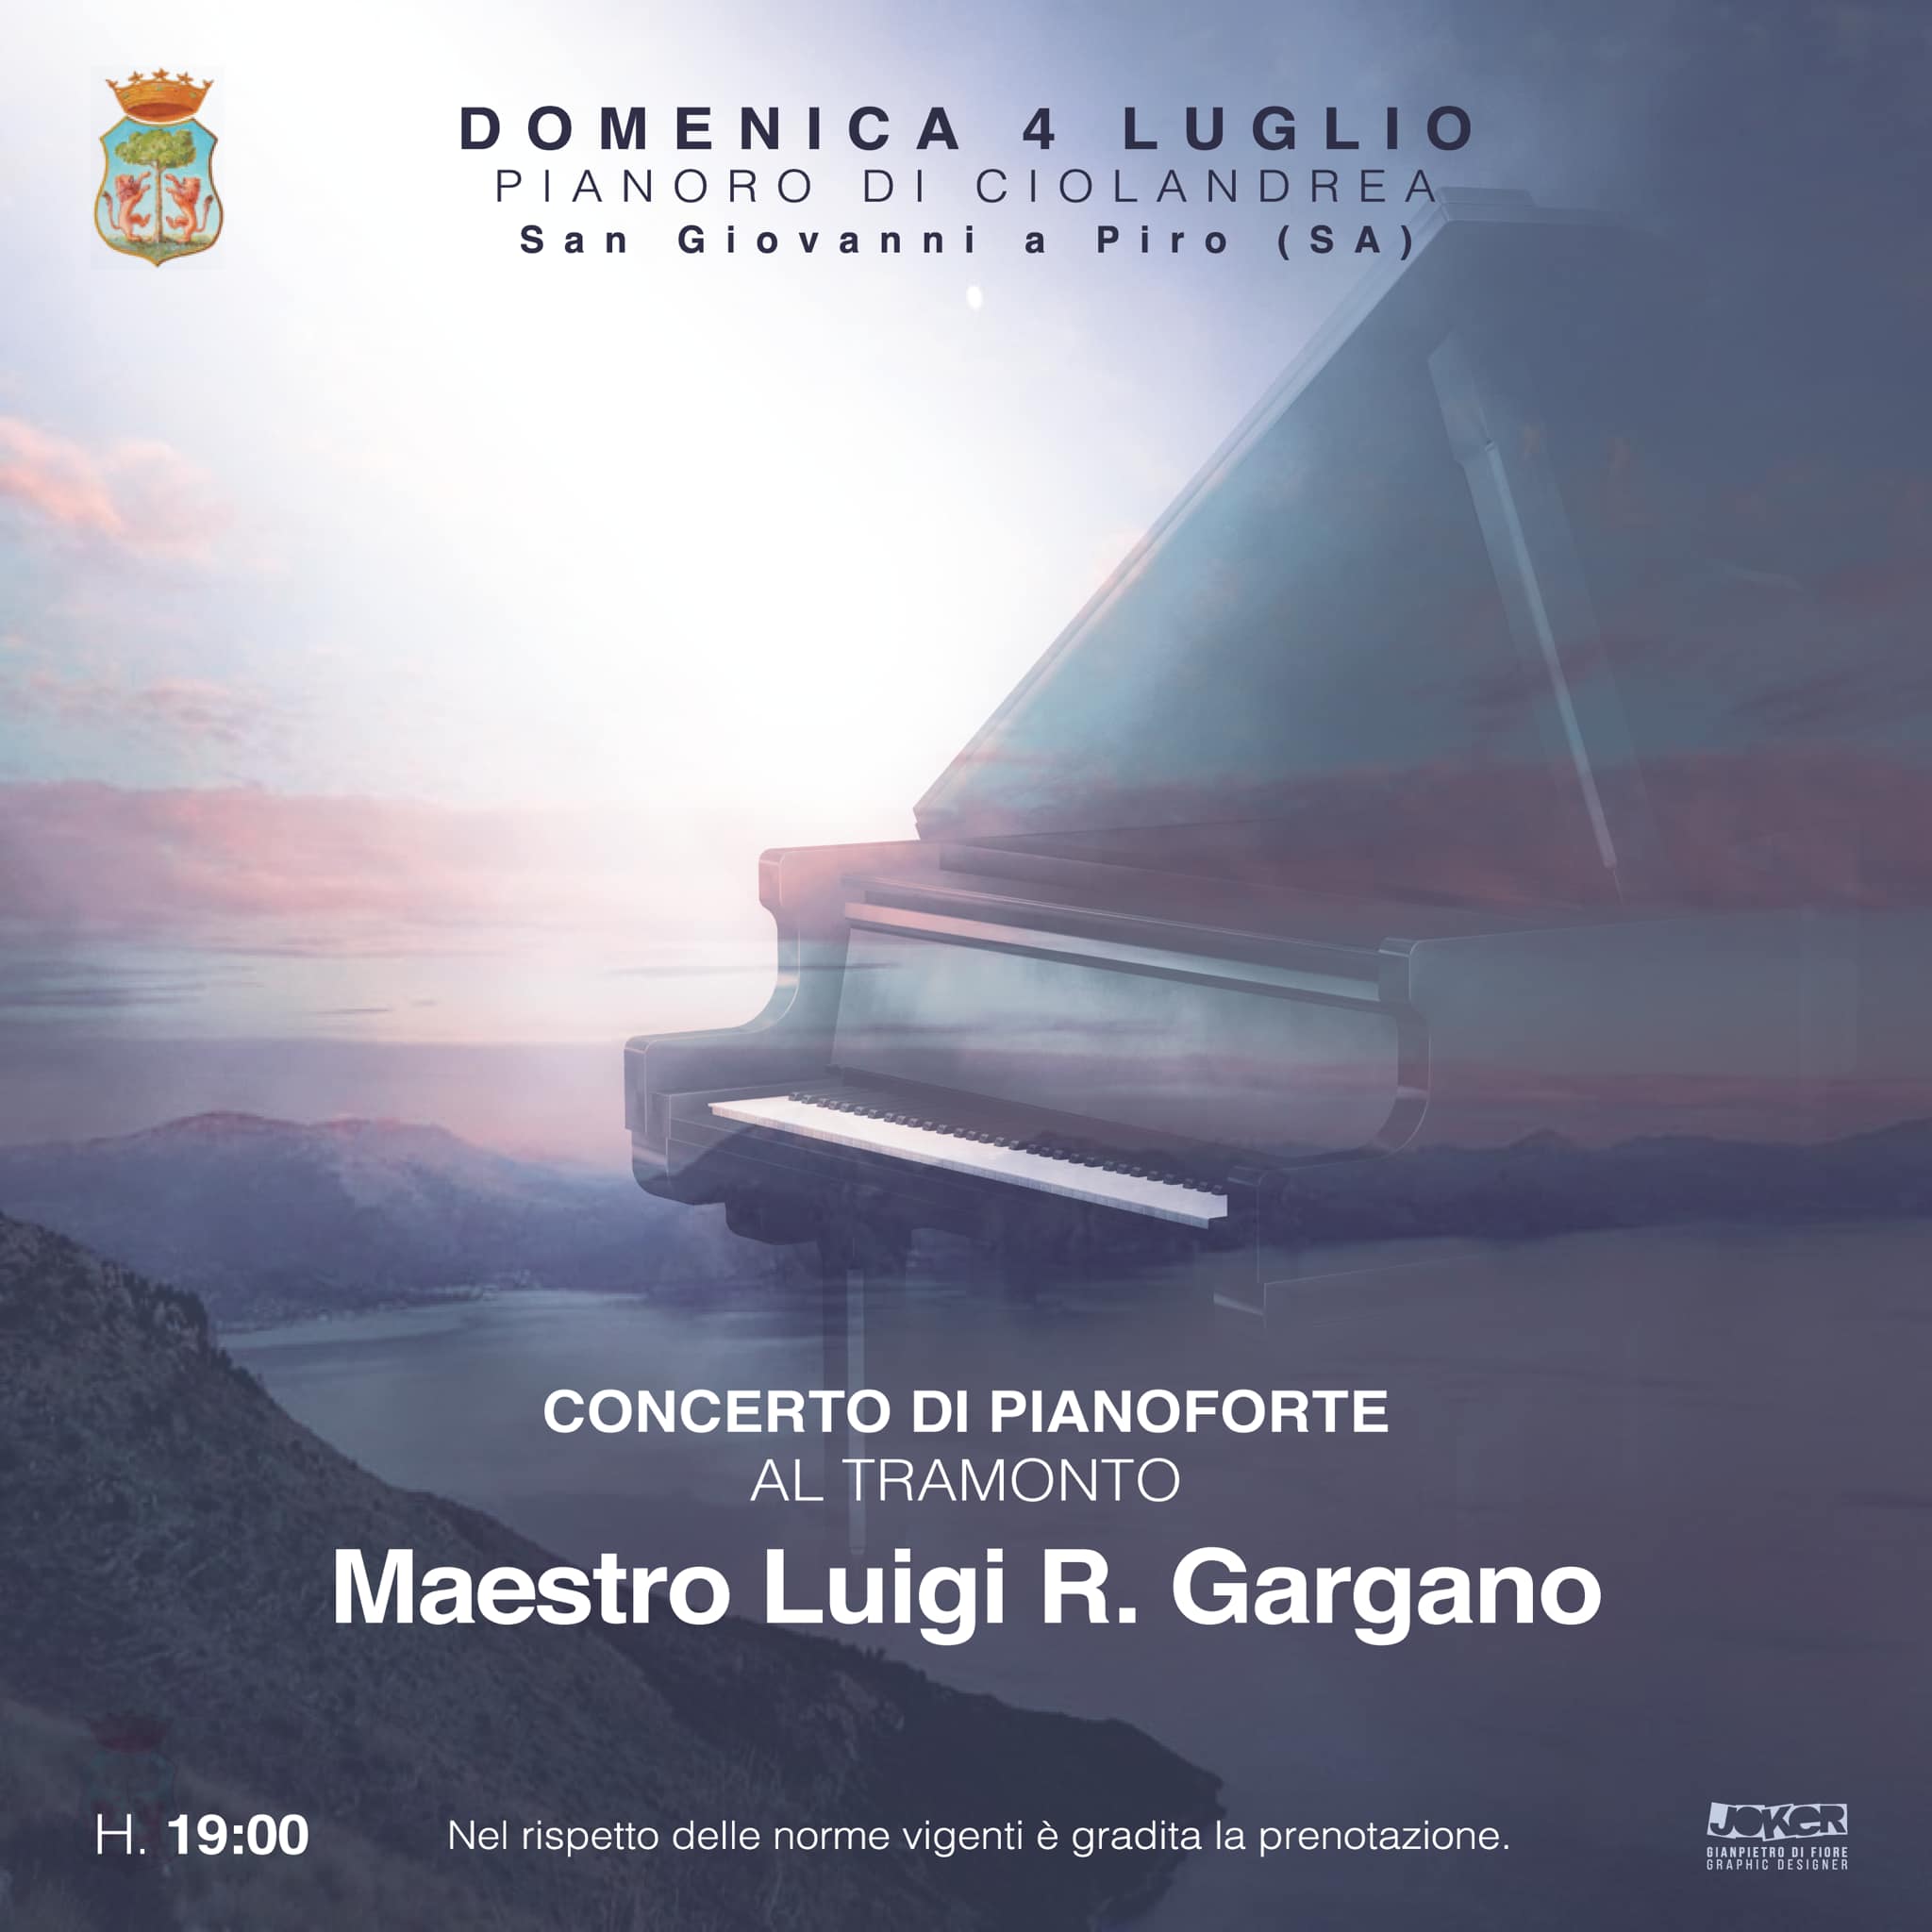 Pianoro di Ciolandrea, domenica concerto al tramonto del maestro Luigi Gargano